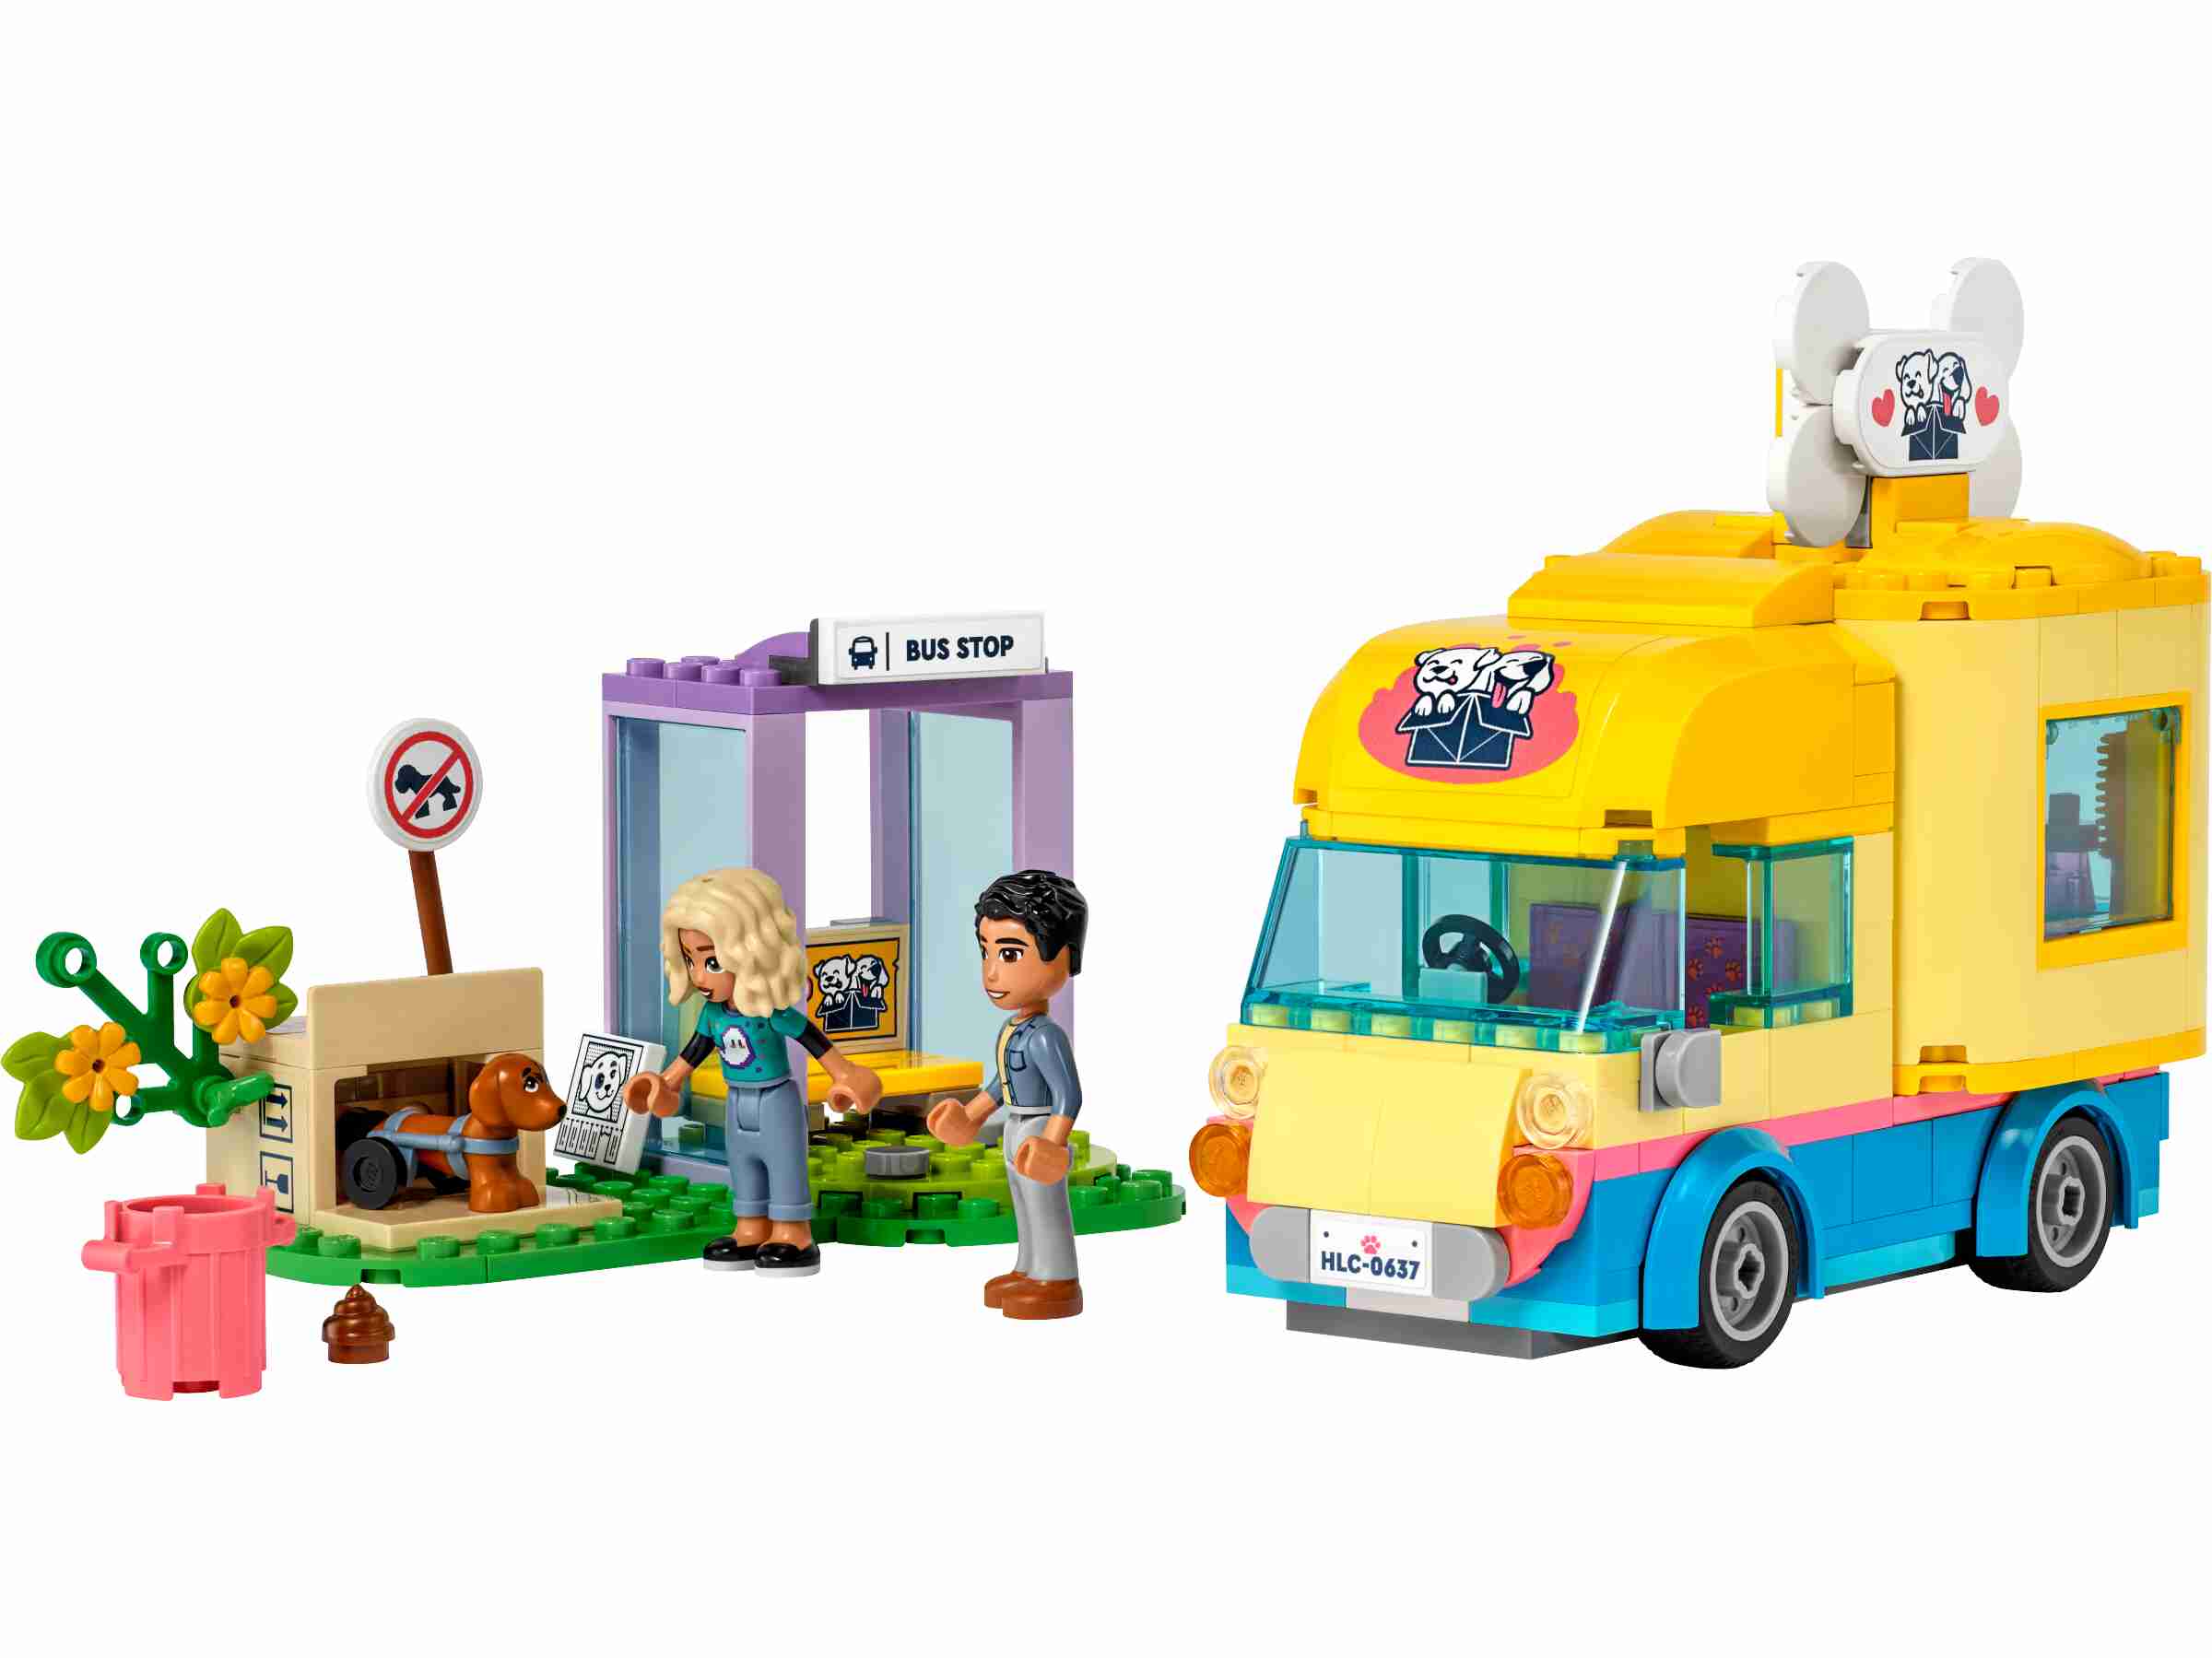 LEGO 41741 Friends Hunderettungswagen, Nova und Dr. Marlon, Hund Pickle